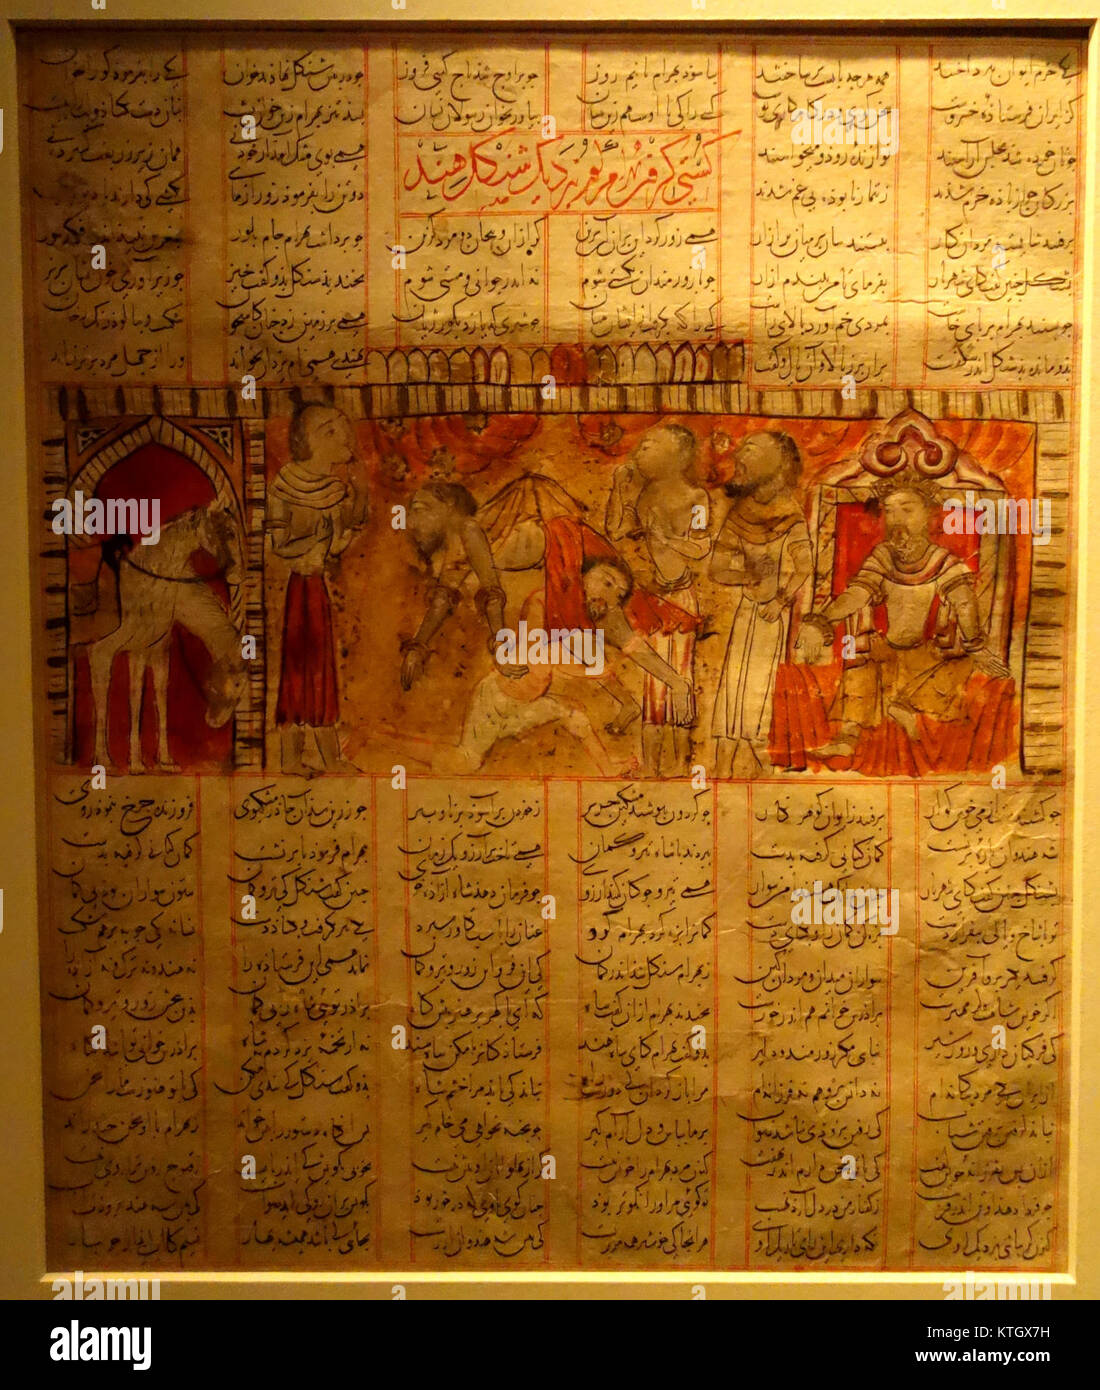 Bahram Gur ringt vor Shangol, unbekannter Künstler, Shiraz, Iran, 1341 AD, Seite von einer verteilten Shah nama Manuskript, Farbe auf Papier Cincinnati Art Museum DSC 03258 Stockfoto